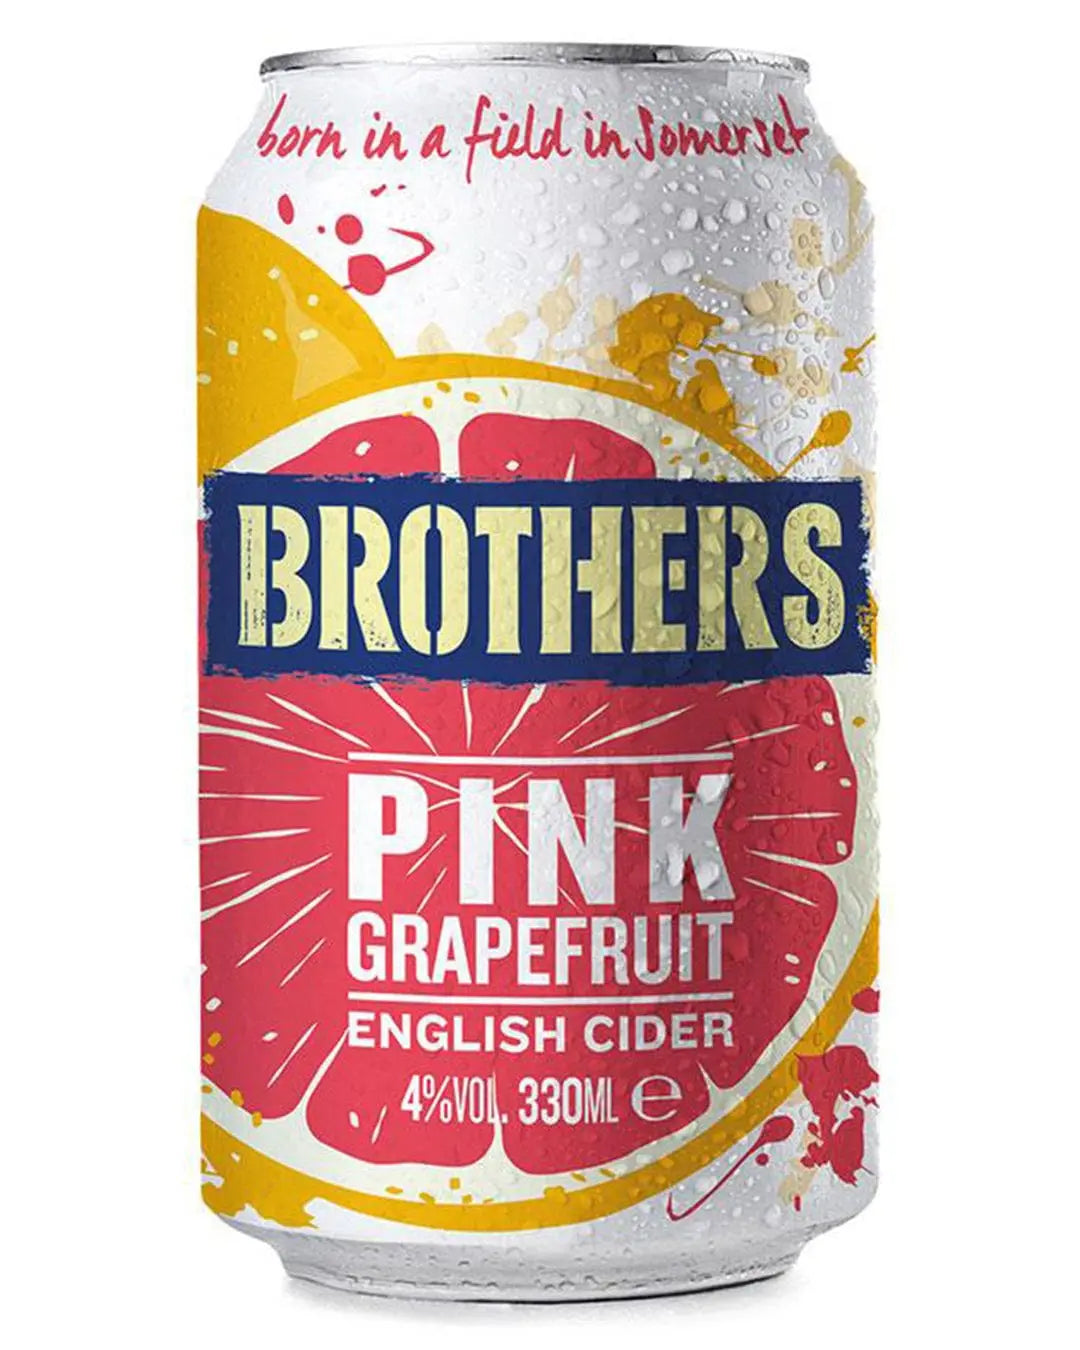 Brothers Pink Grapefruit Cider, 330 ml Cider